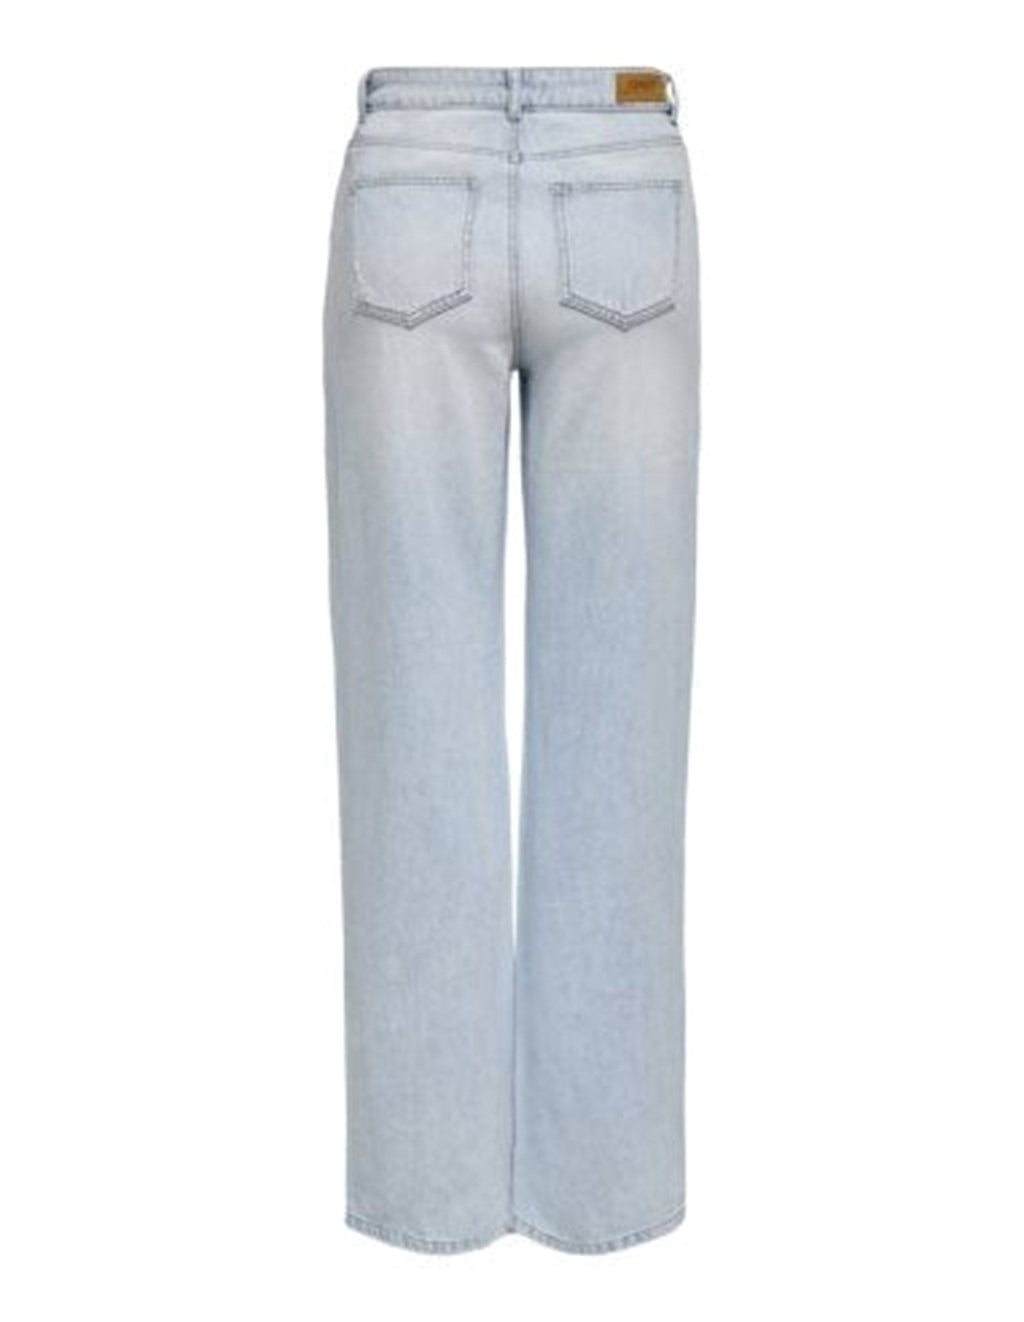 Juicy Jeans (weites Bein) - helles Denimblau